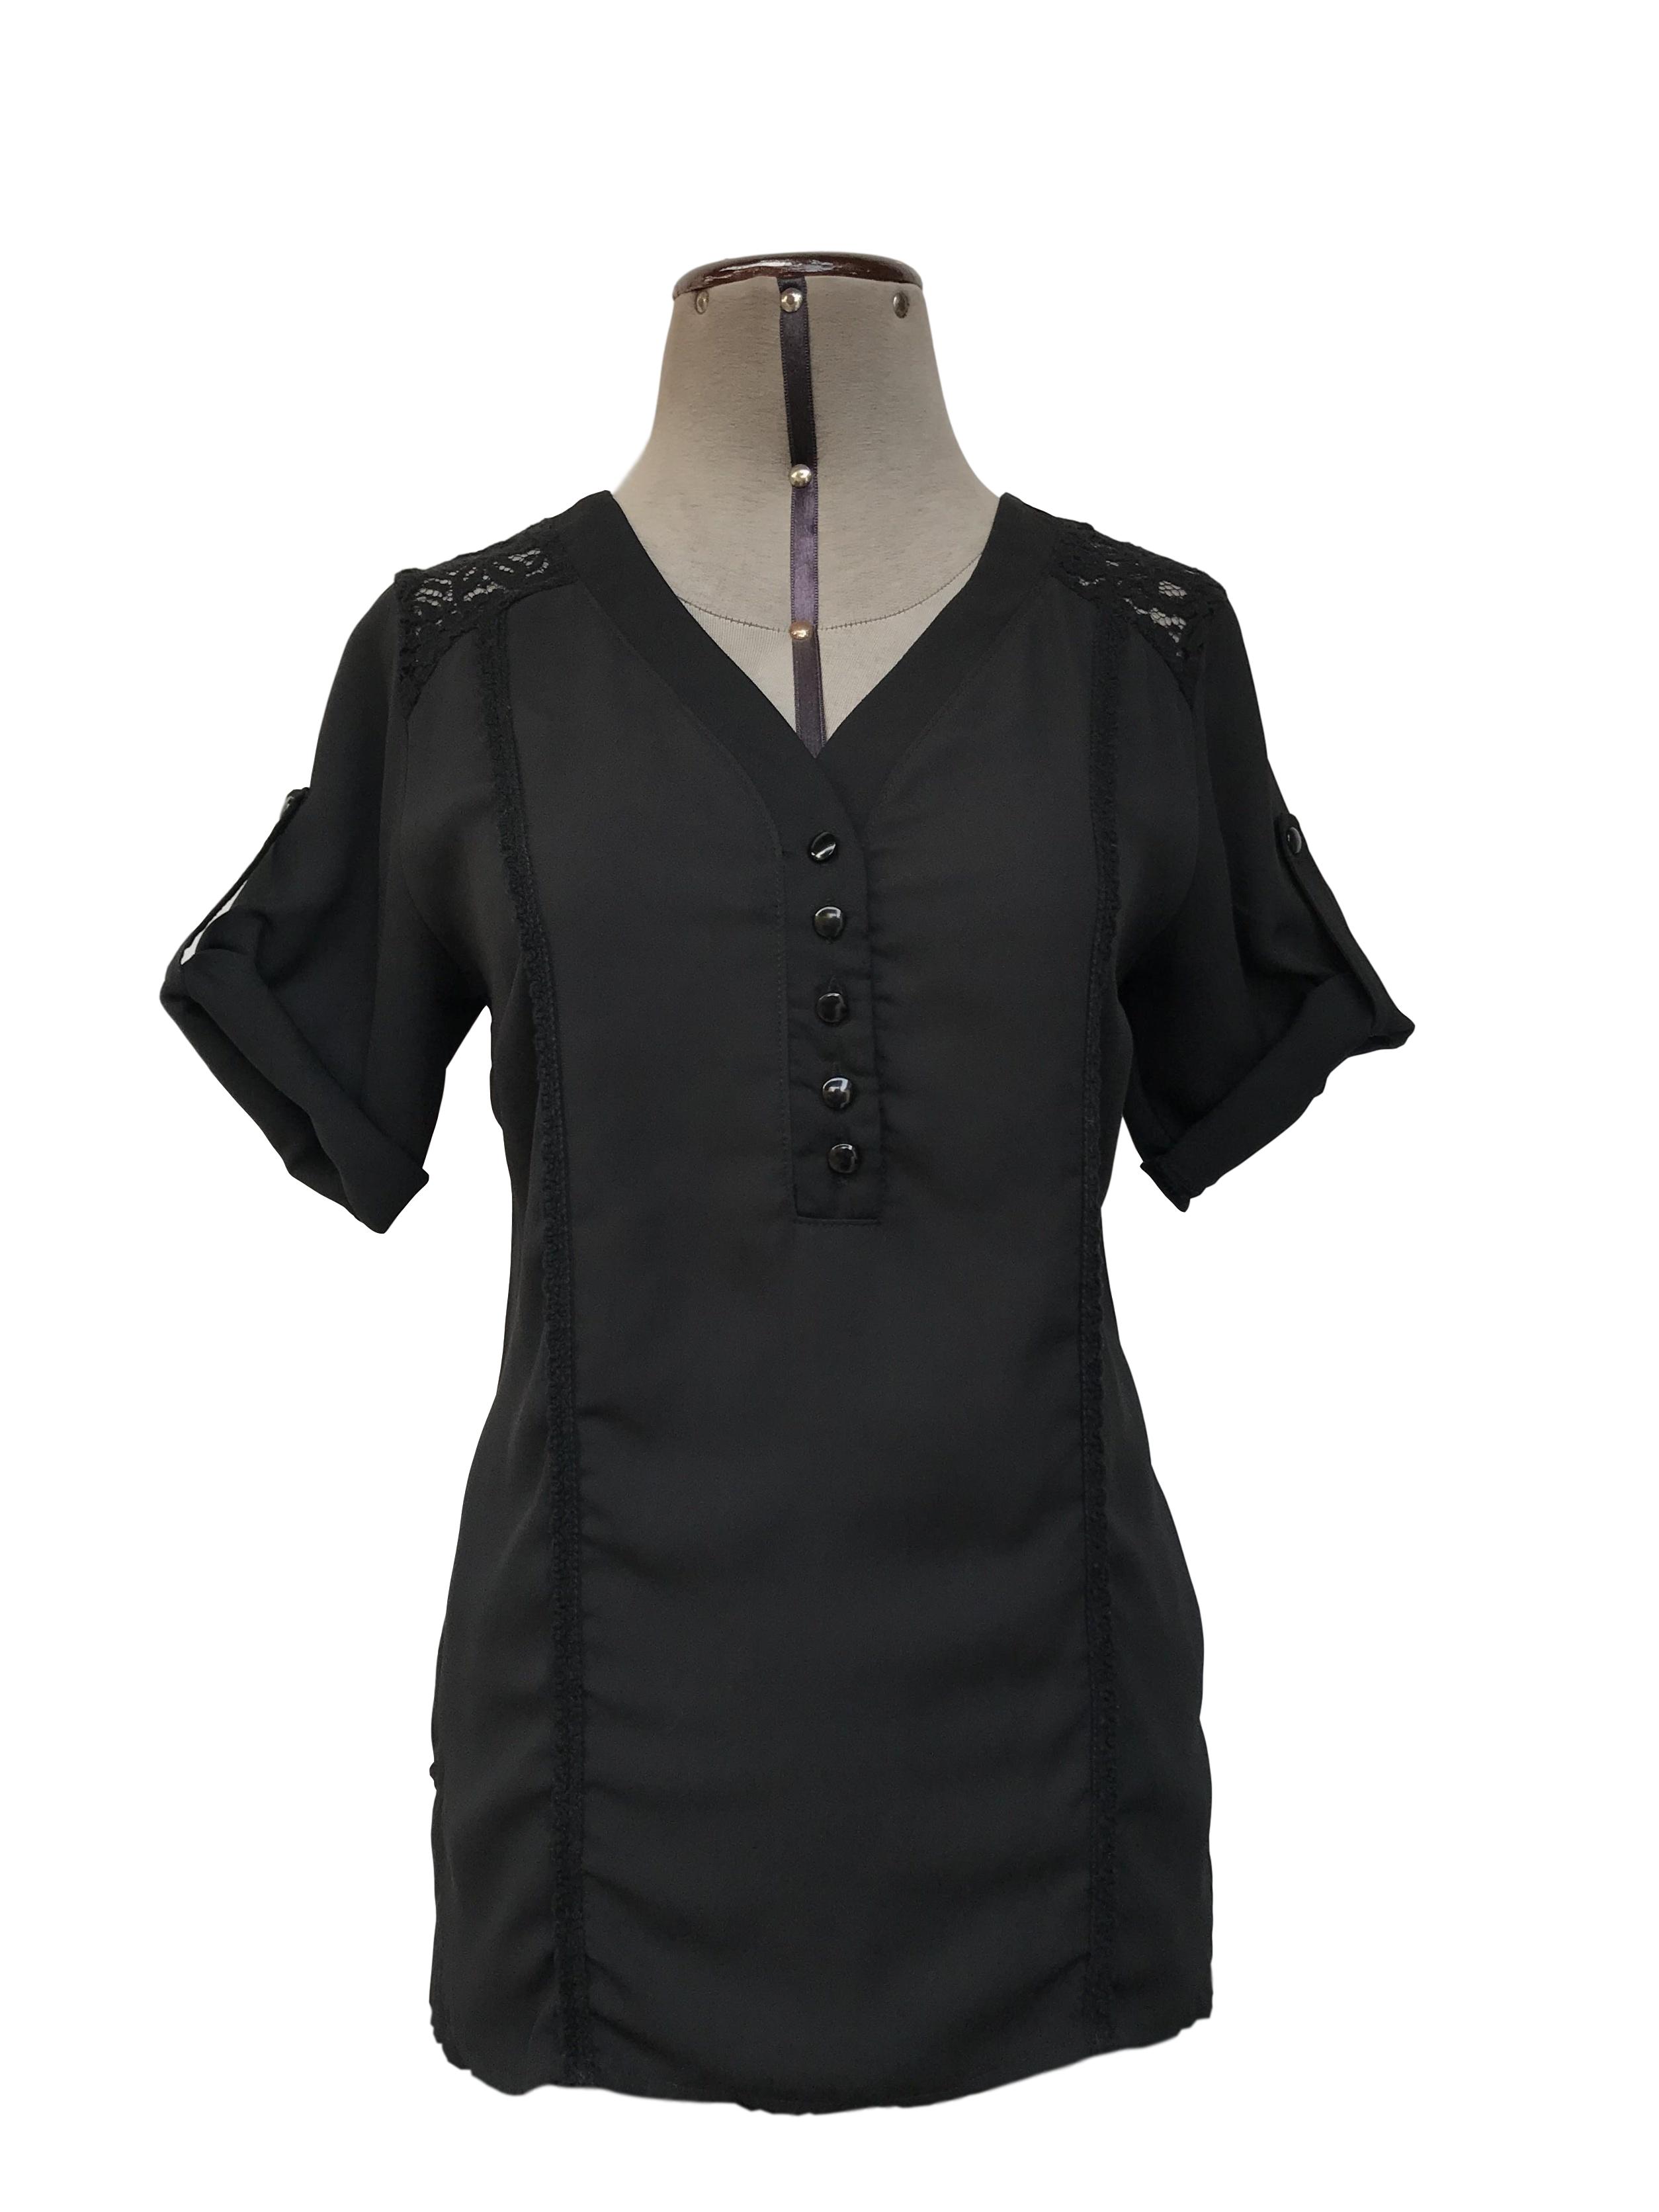 Blusa tipo gasa negra con encaje en hombros, botones en el pecho y blondas delanteras, manga 3/4 regulable con botón
Talla M chico